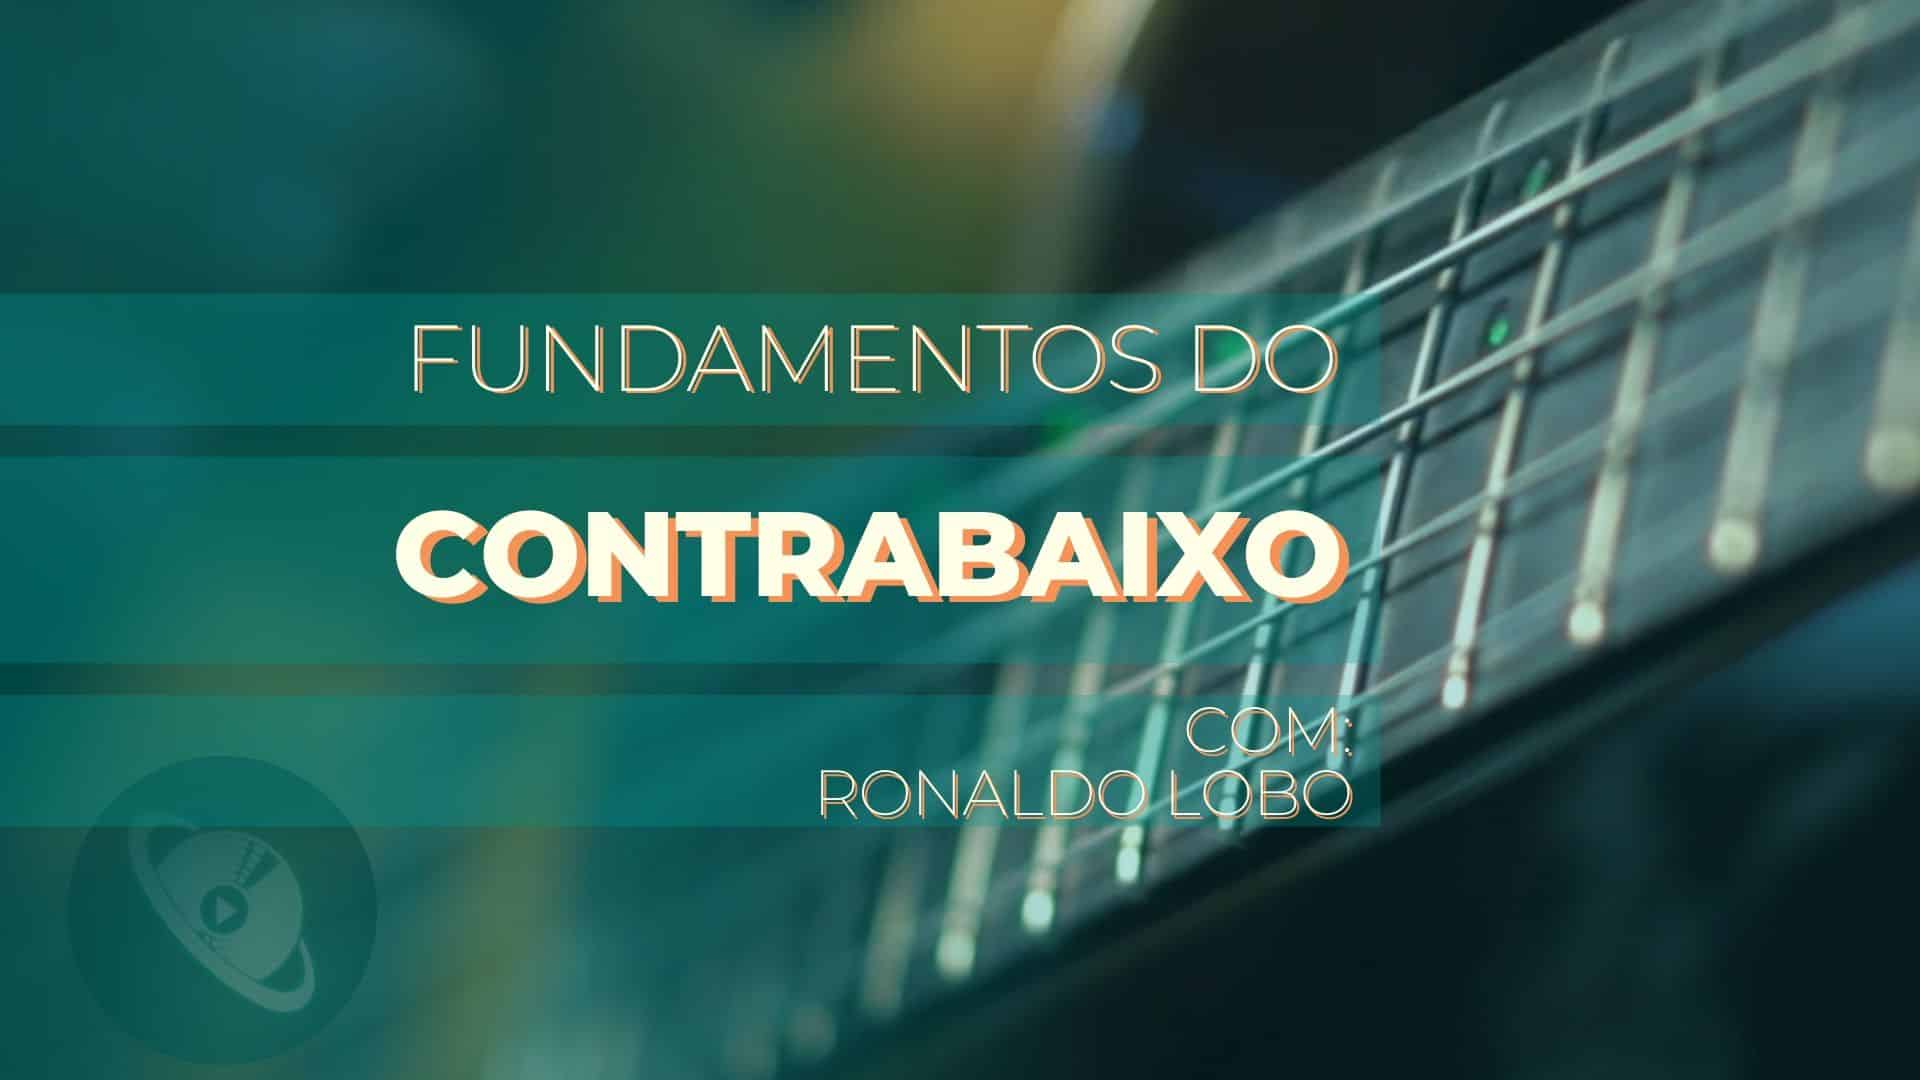 Quer aprender a tocar baixo? Aprenda com Ronaldo Lobo